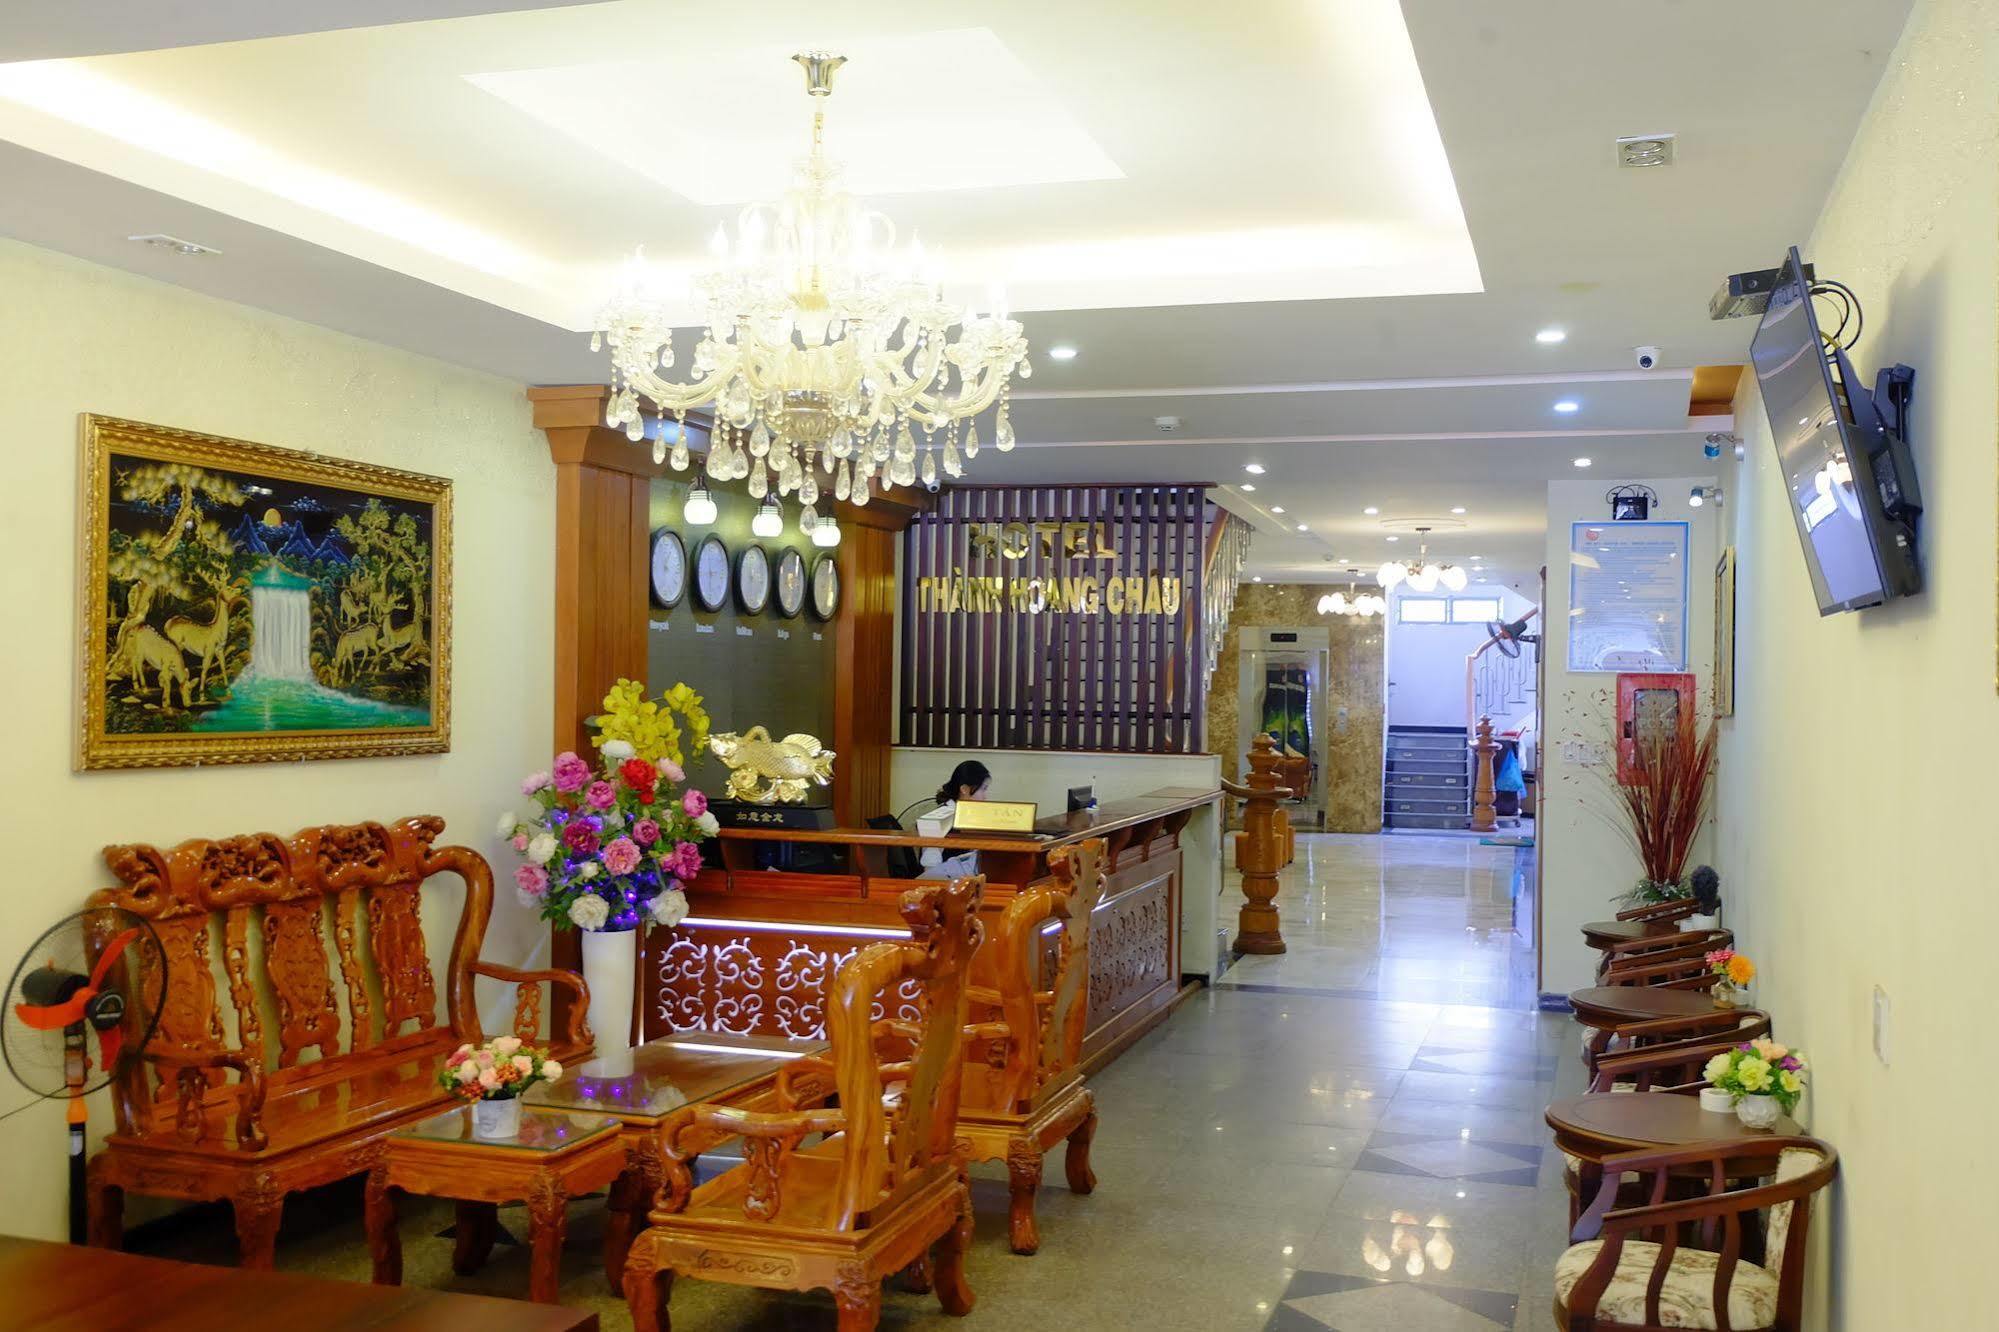 Thanh Hoang Chau Hotel Da Nang Bagian luar foto